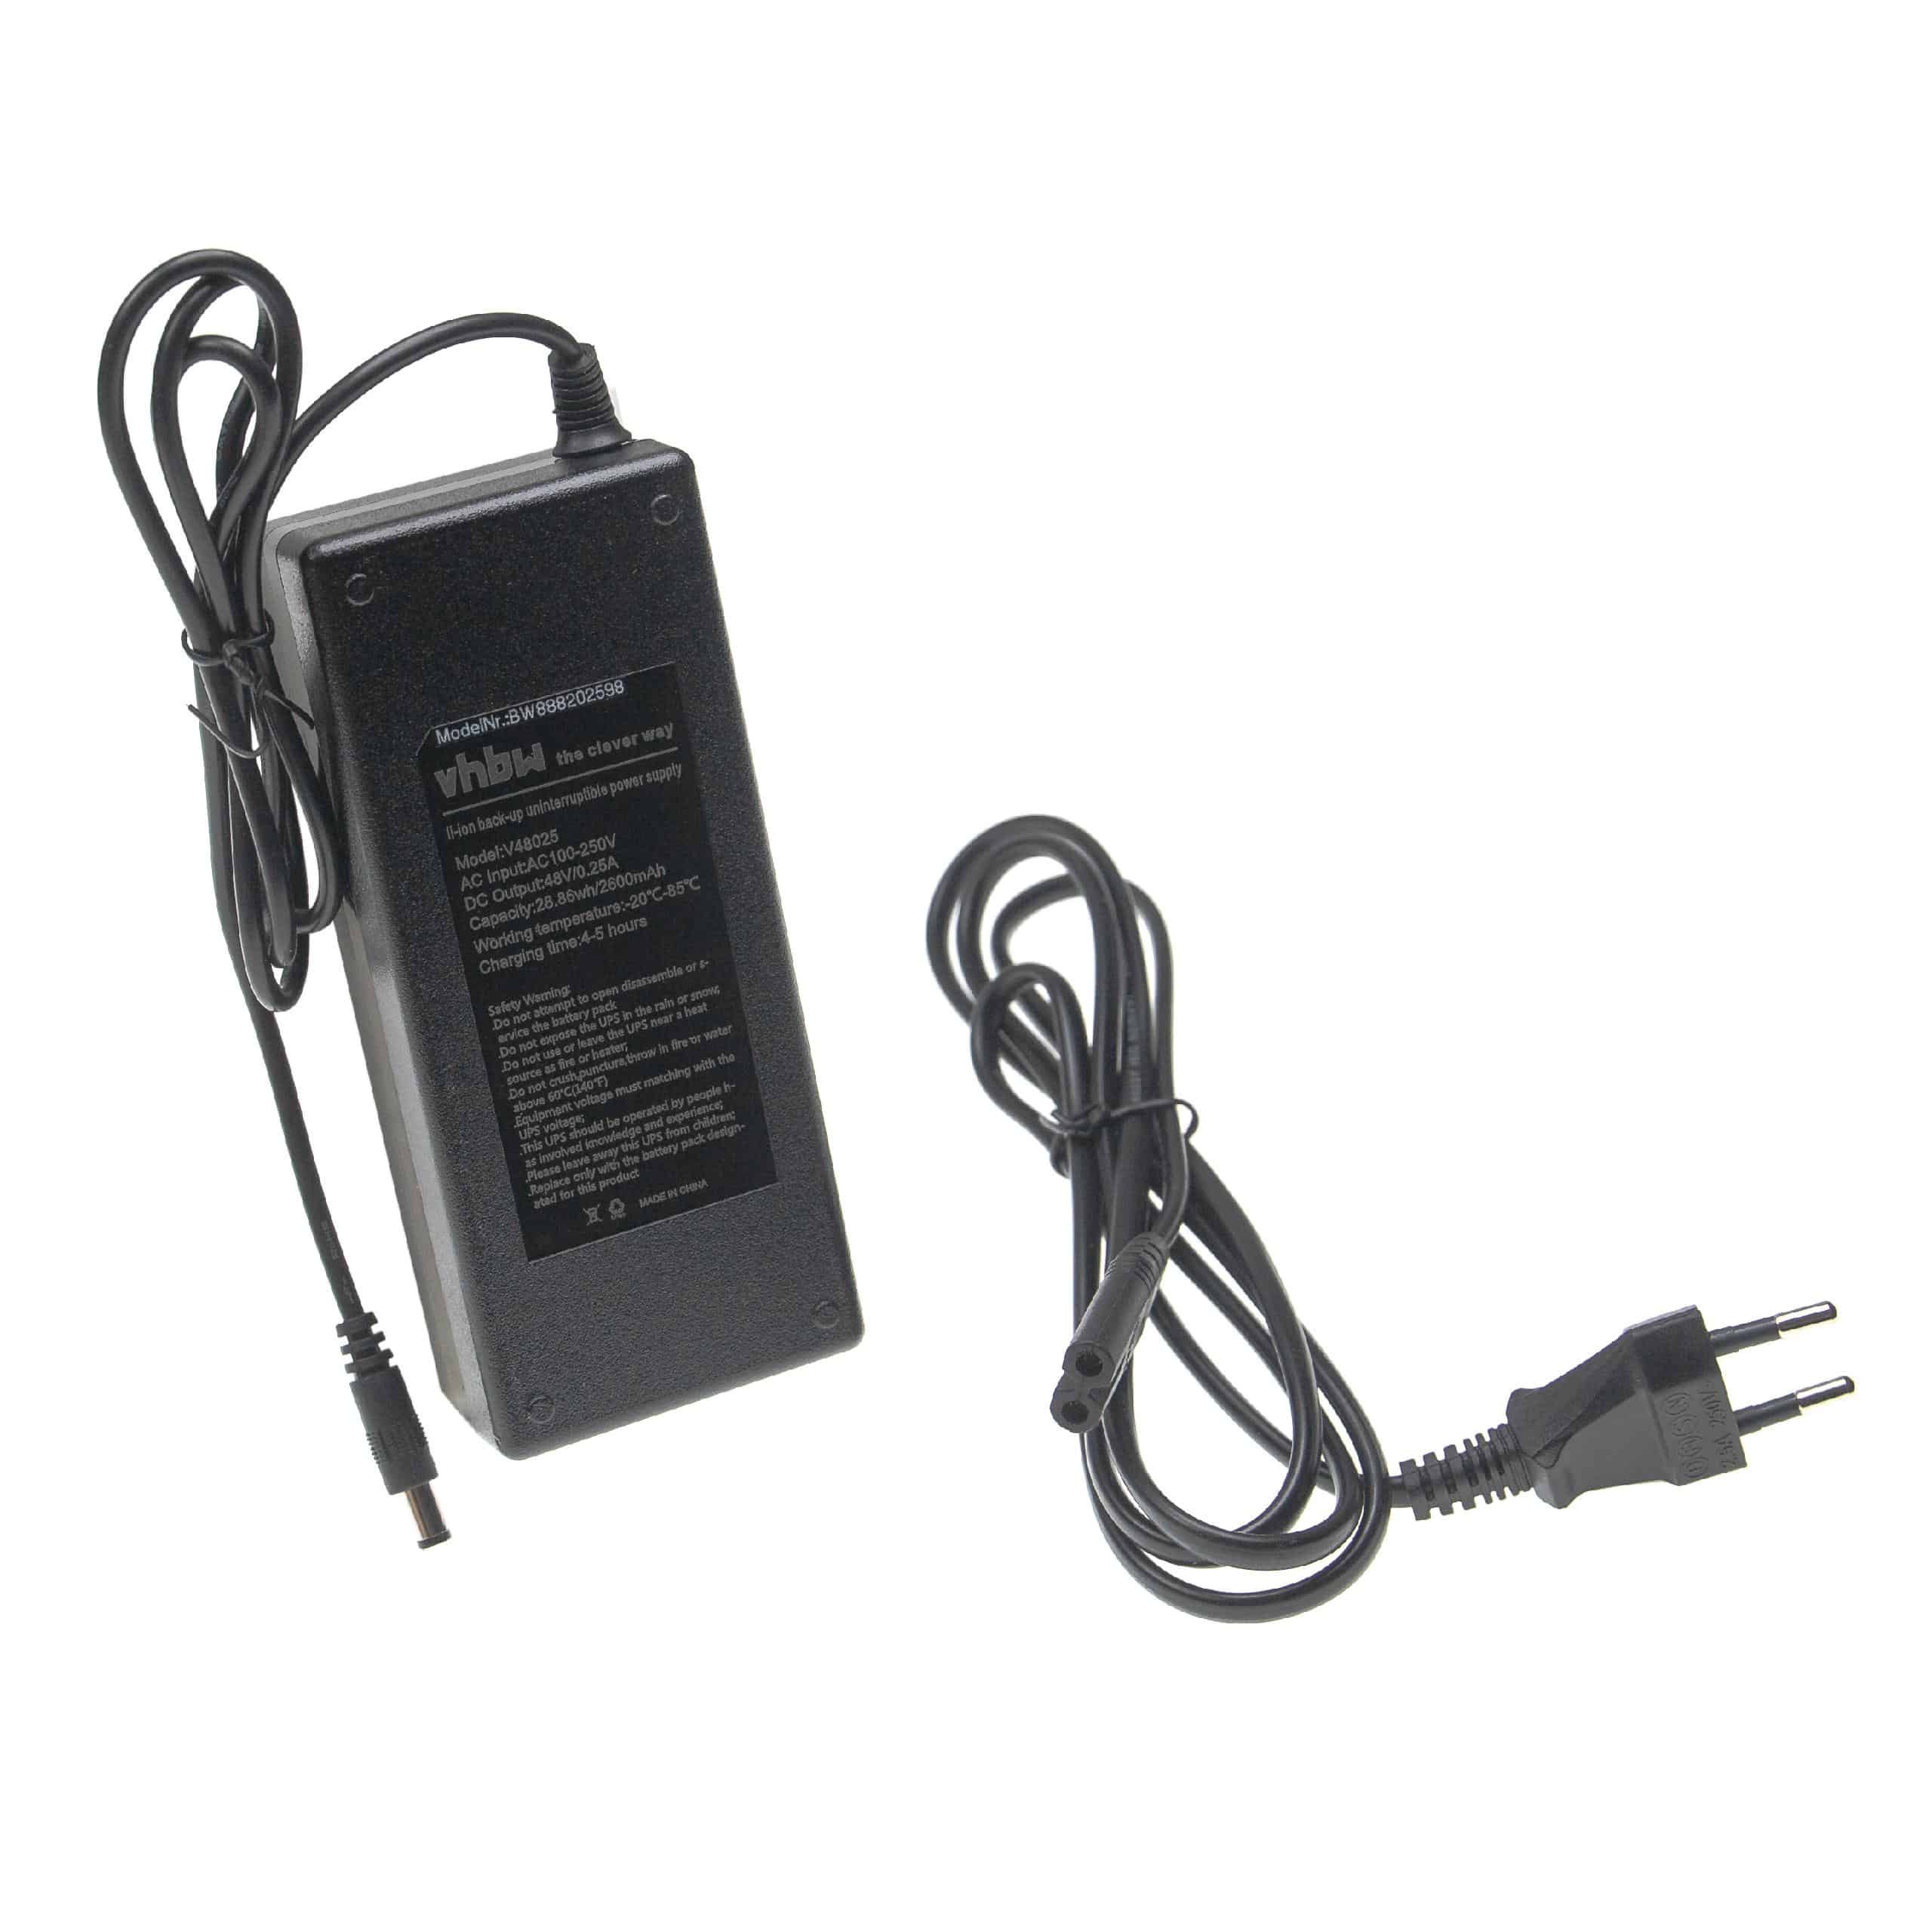 Fuente alimentación con USV para router, cámara IP, módem, ordenador - 48 V / 0,25 A, 28,86 Wh, 5,5 x 2,1 mm